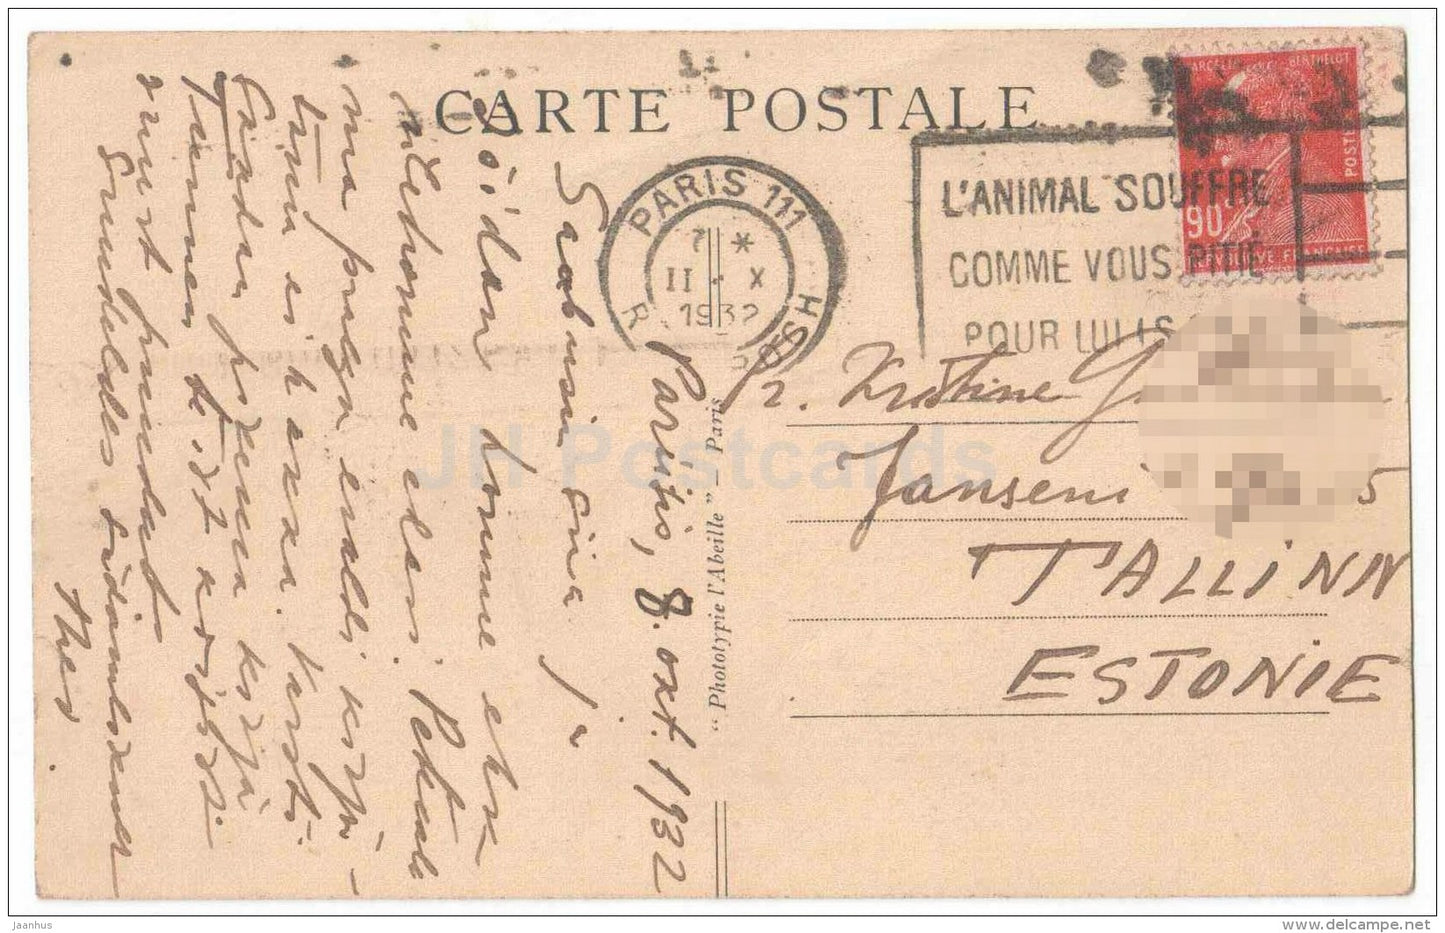 Champs-Elysees - Le Petit Palais - palace - 125 - Paris - France - sent from France Paris to to Estonia Tallinn 1932 - JH Postcards